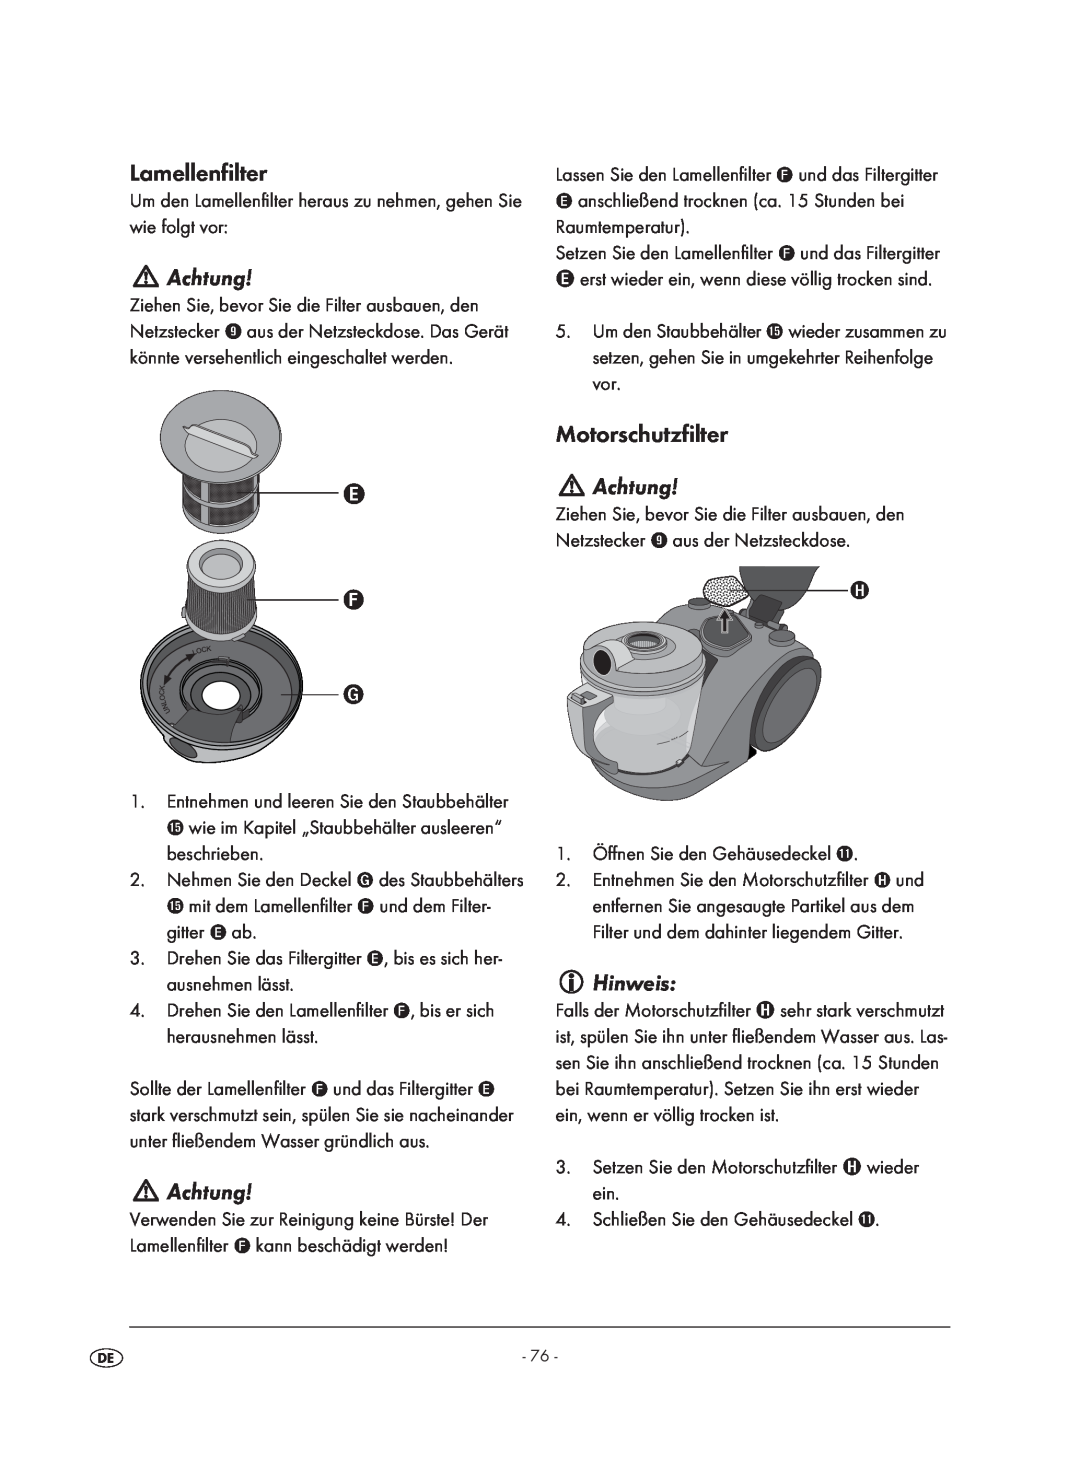 Kompernass KH 1410 operating instructions Lamellenfilter, Achtung, Motorschutzfilter, Hinweis 